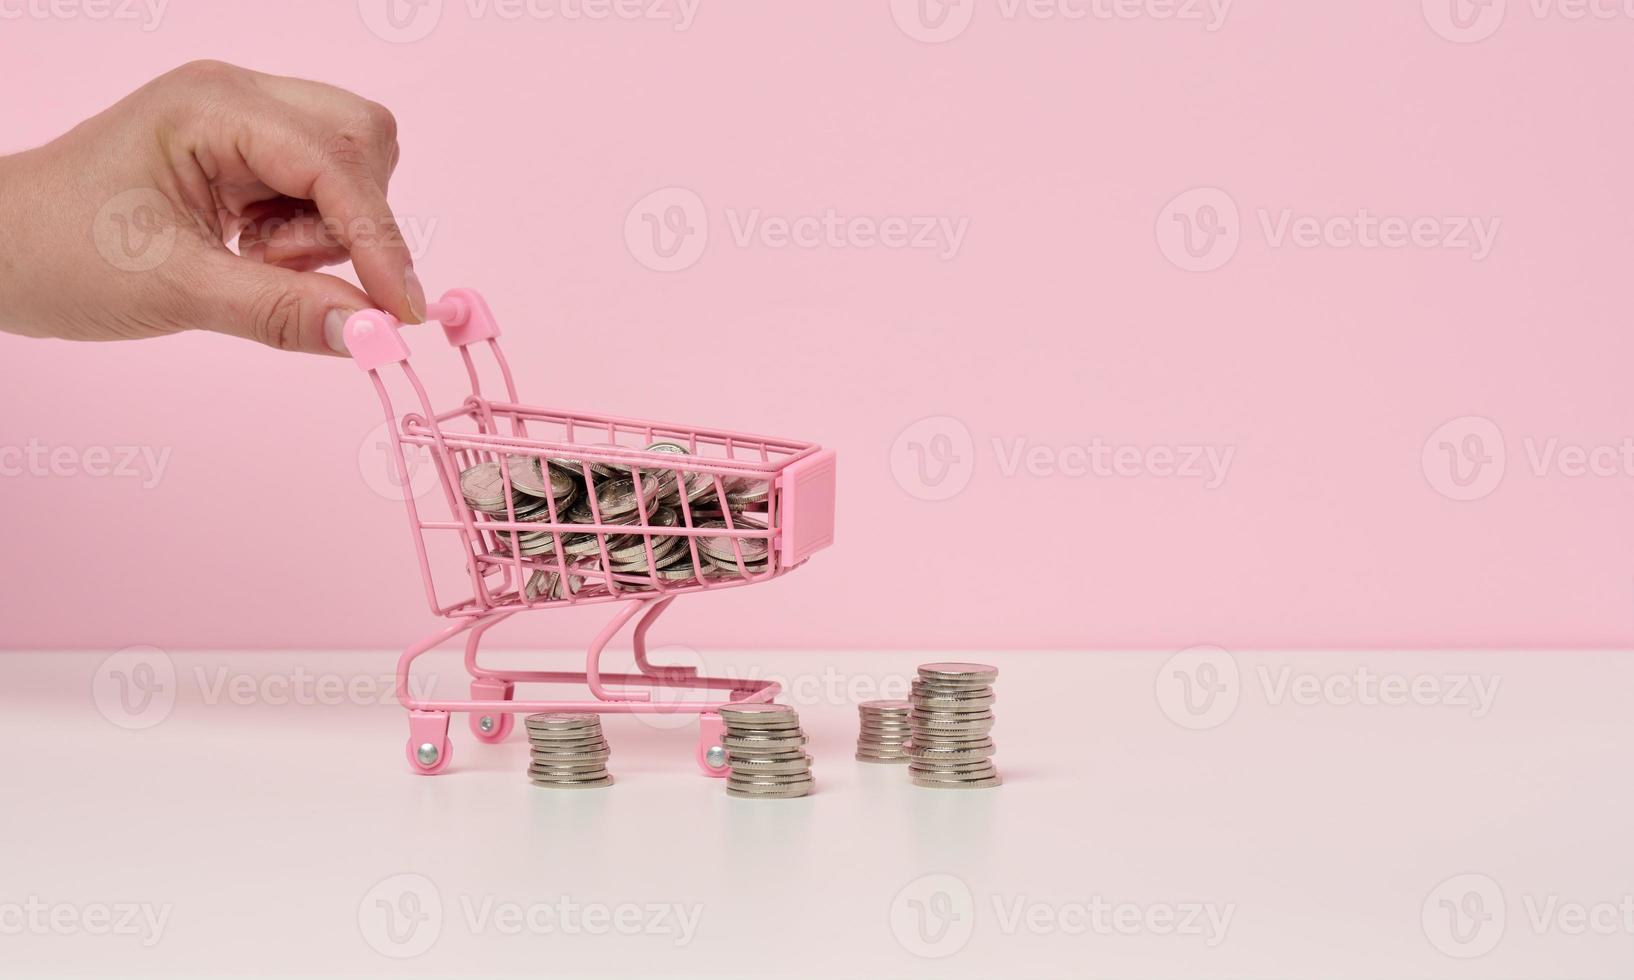 fêmea mão empurra uma miniatura metal compras carrinho e uma pilha do moedas em uma branco mesa. a conceito do descontos e vendas, despesas poupança. conectados comércio foto